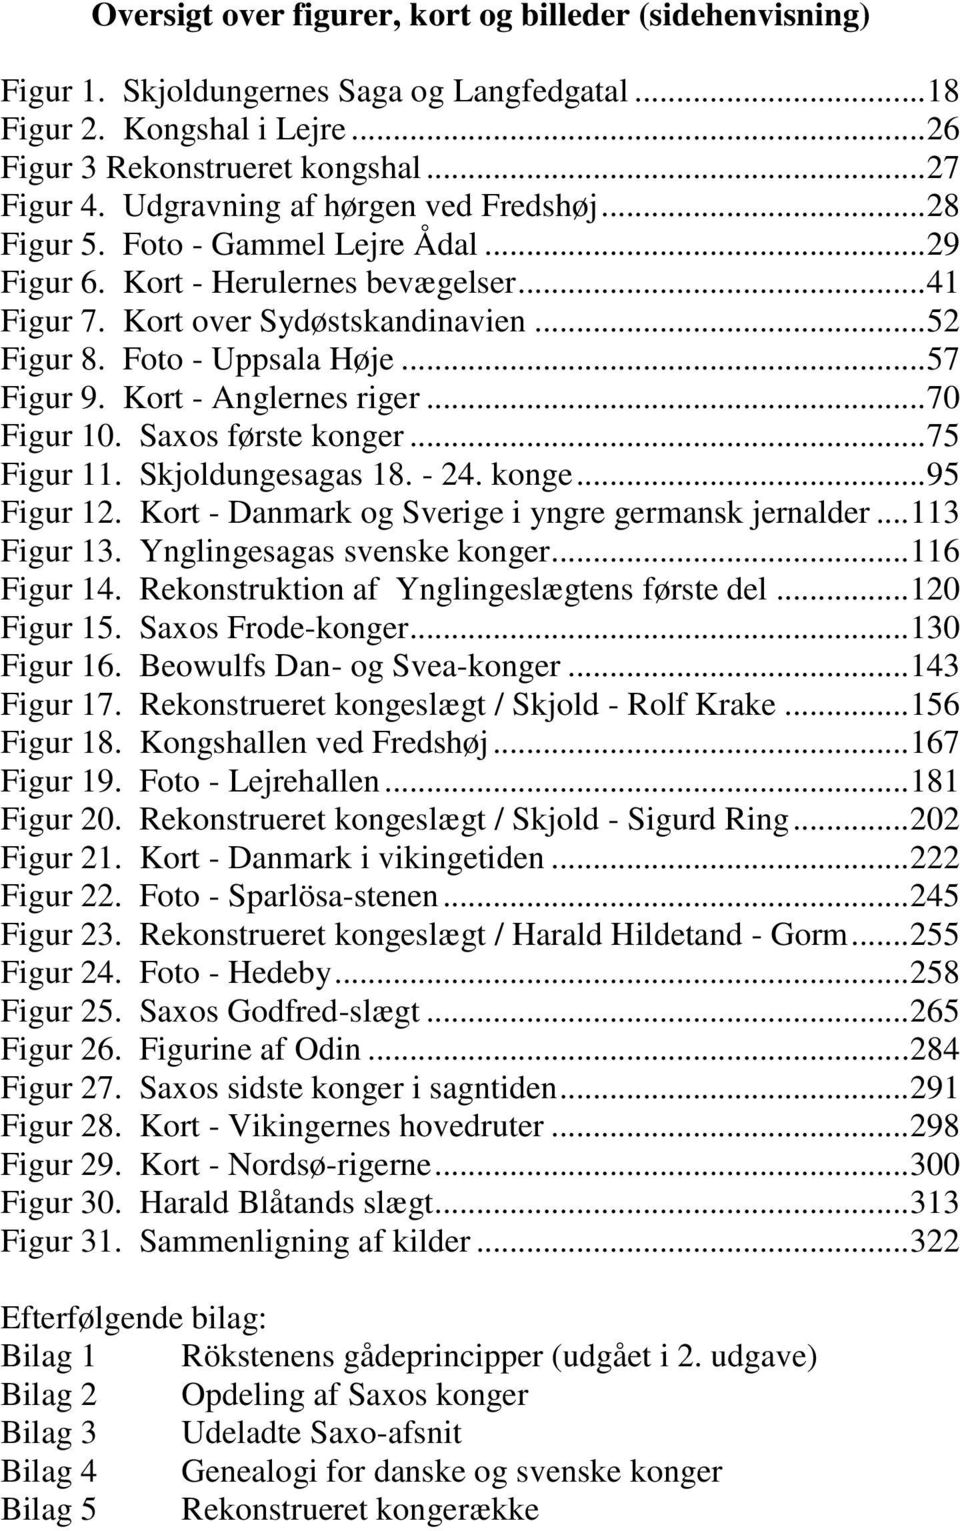 .. 57 Figur 9. Kort - Anglernes riger... 70 Figur 10. Saxos første konger... 75 Figur 11. Skjoldungesagas 18. - 24. konge... 95 Figur 12. Kort - Danmark og Sverige i yngre germansk jernalder.